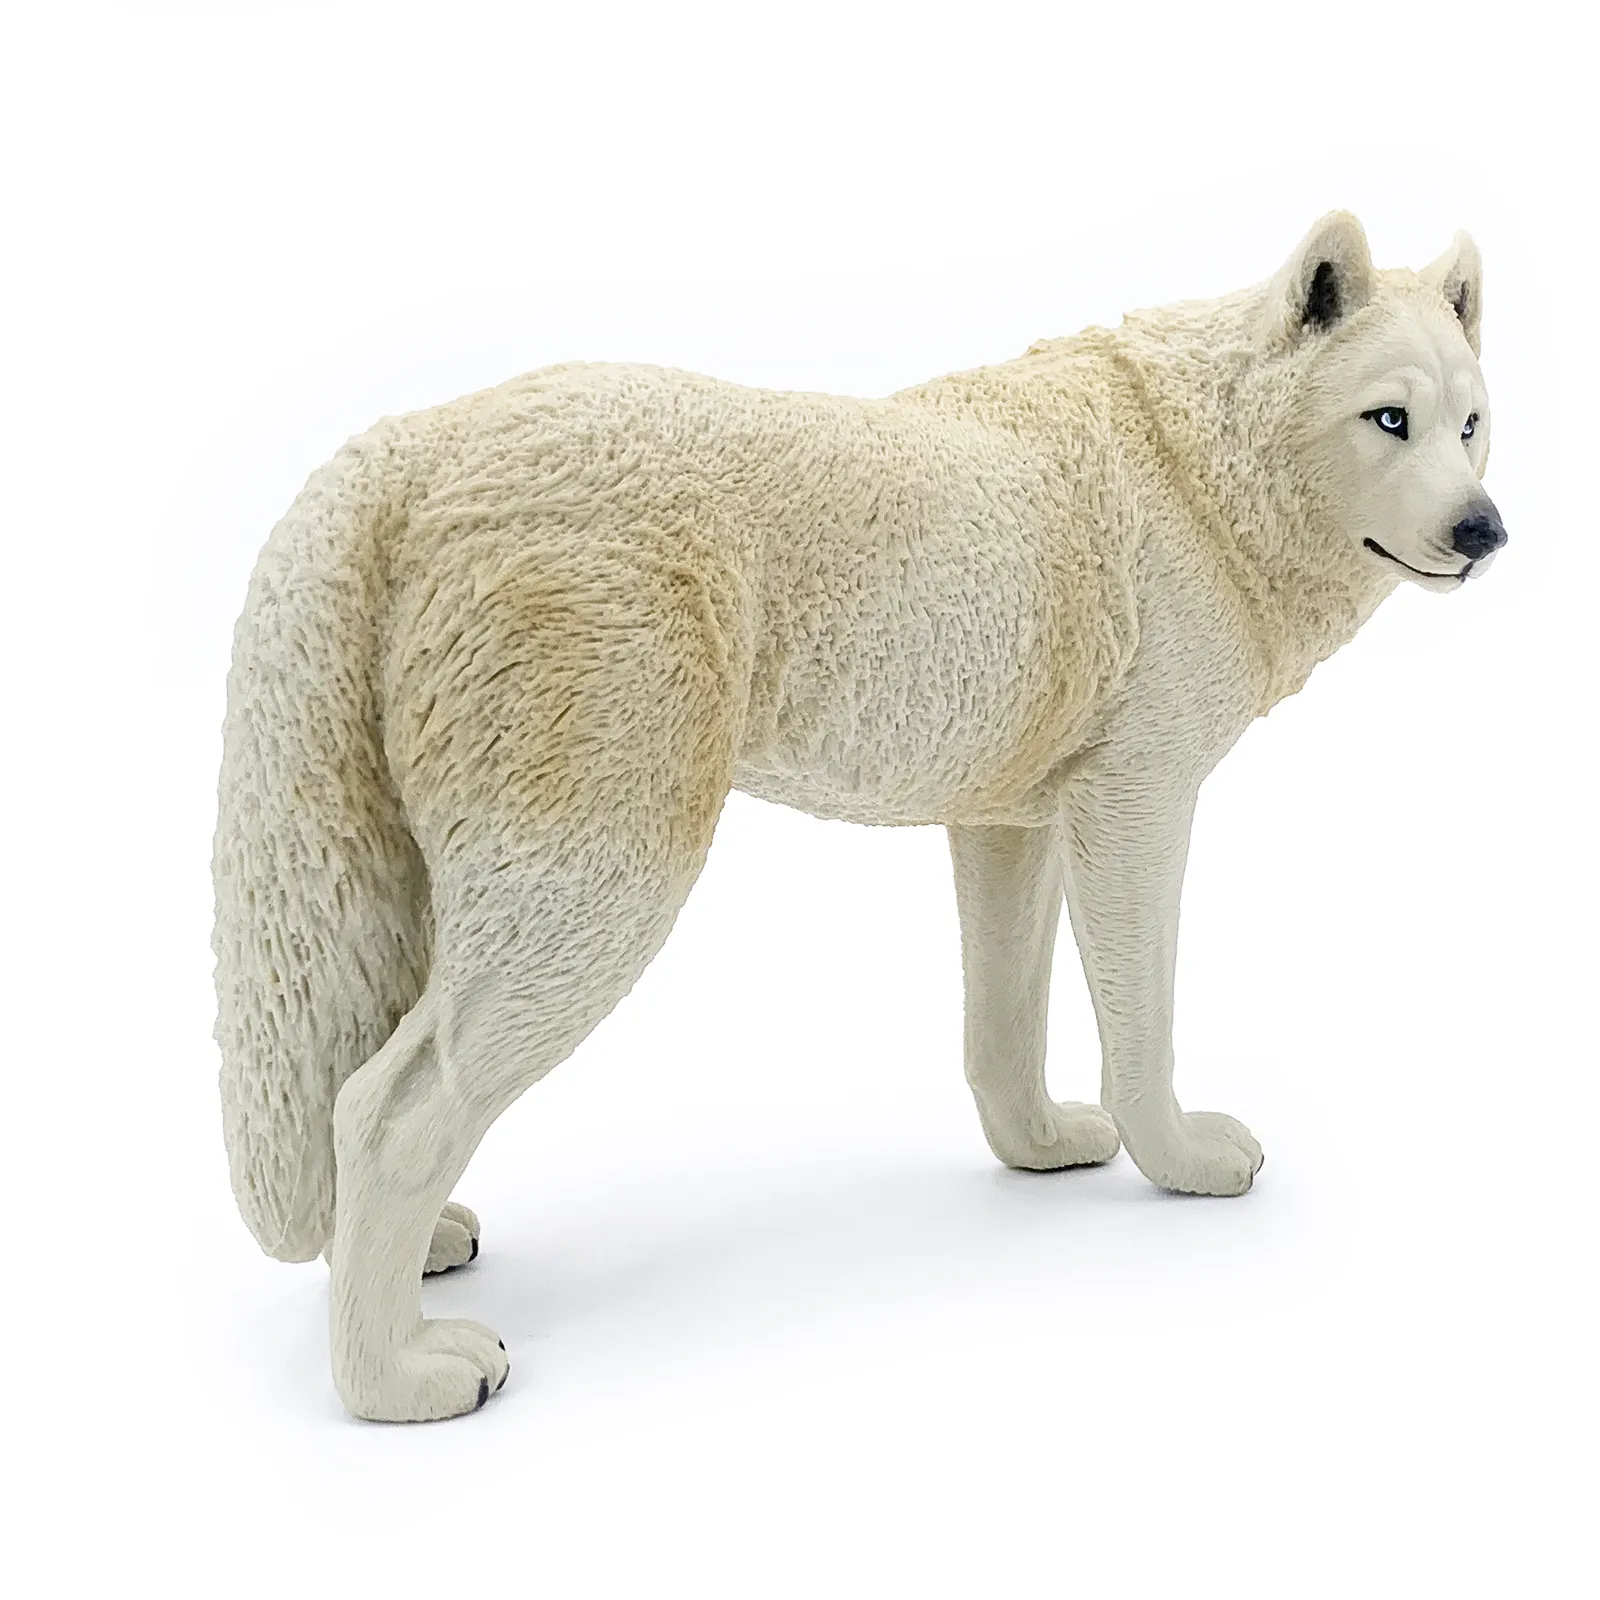 Figura de animal de plástico PVC realista de alta qualidade para animais selvagens, brinquedo ecológico realista para caminhar, figura de lobo branco